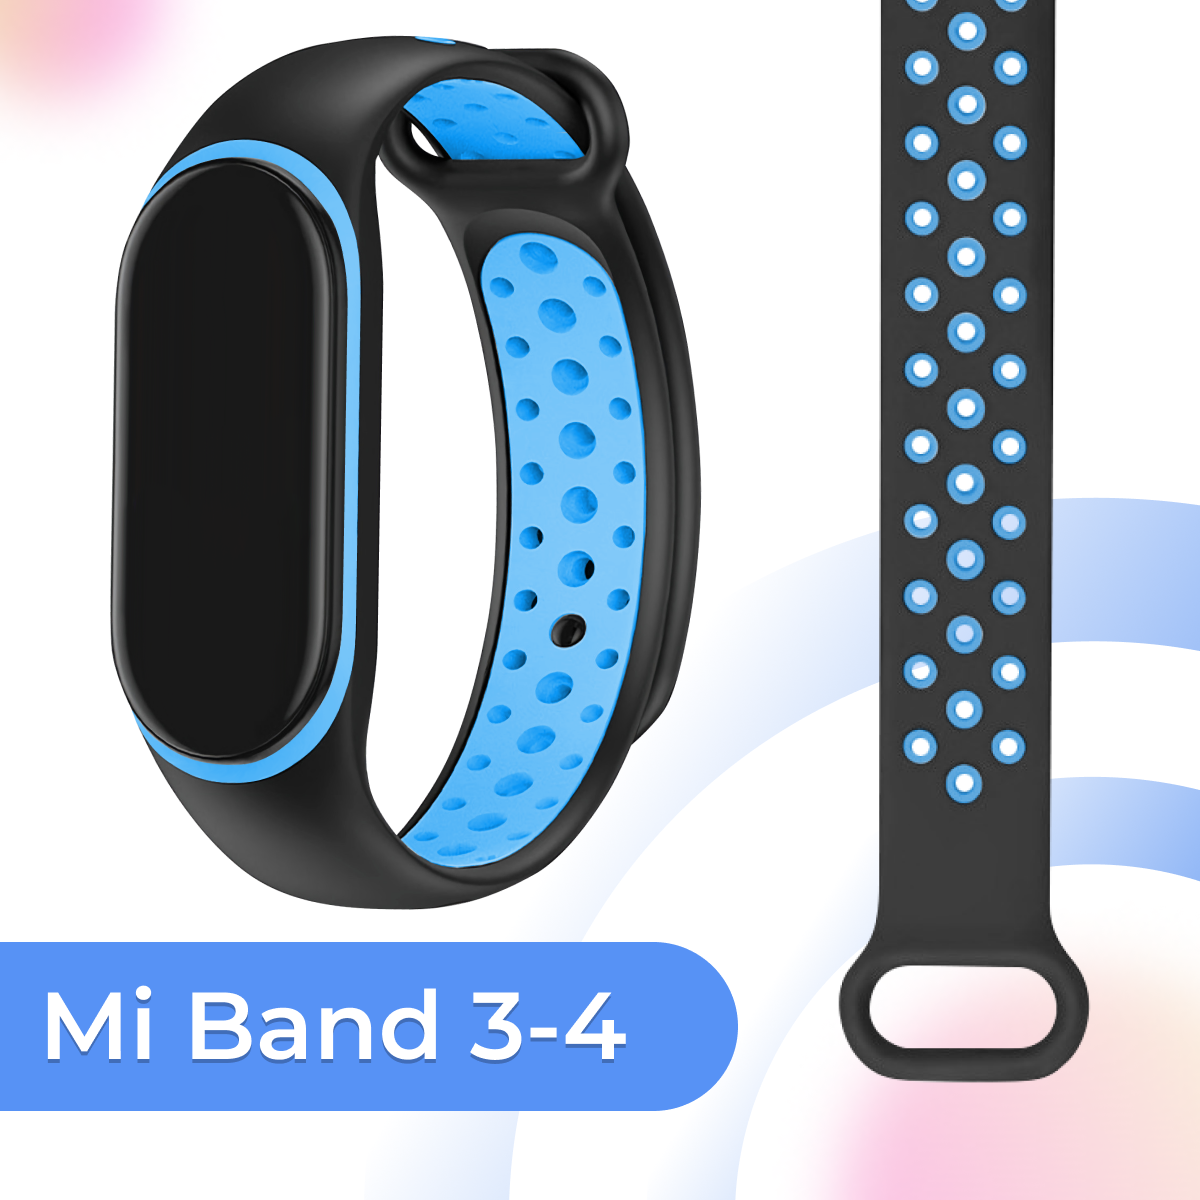 Силиконовый ремешок с перфорацией для смарт часов Xiaomi Mi Band 3 и 4 / Спортивный браслет на фитнес трекер Сяоми Ми Бэнд 3 и 4 / Черно-голубой